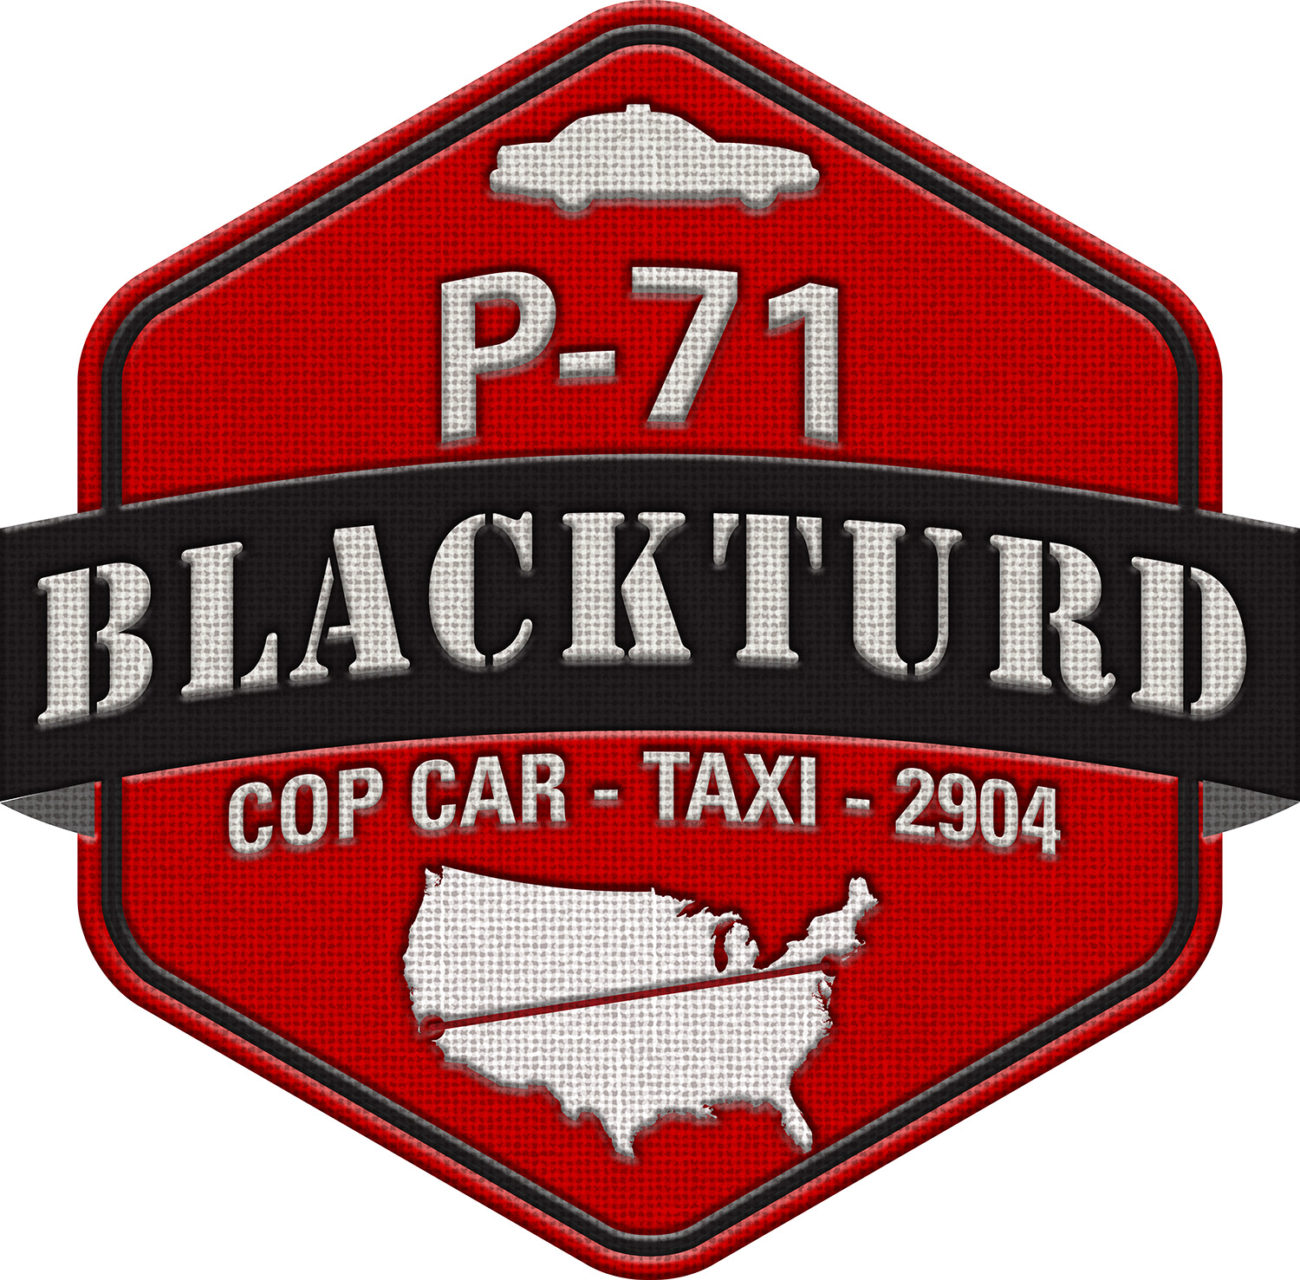 Team P-71 Blackturd logo